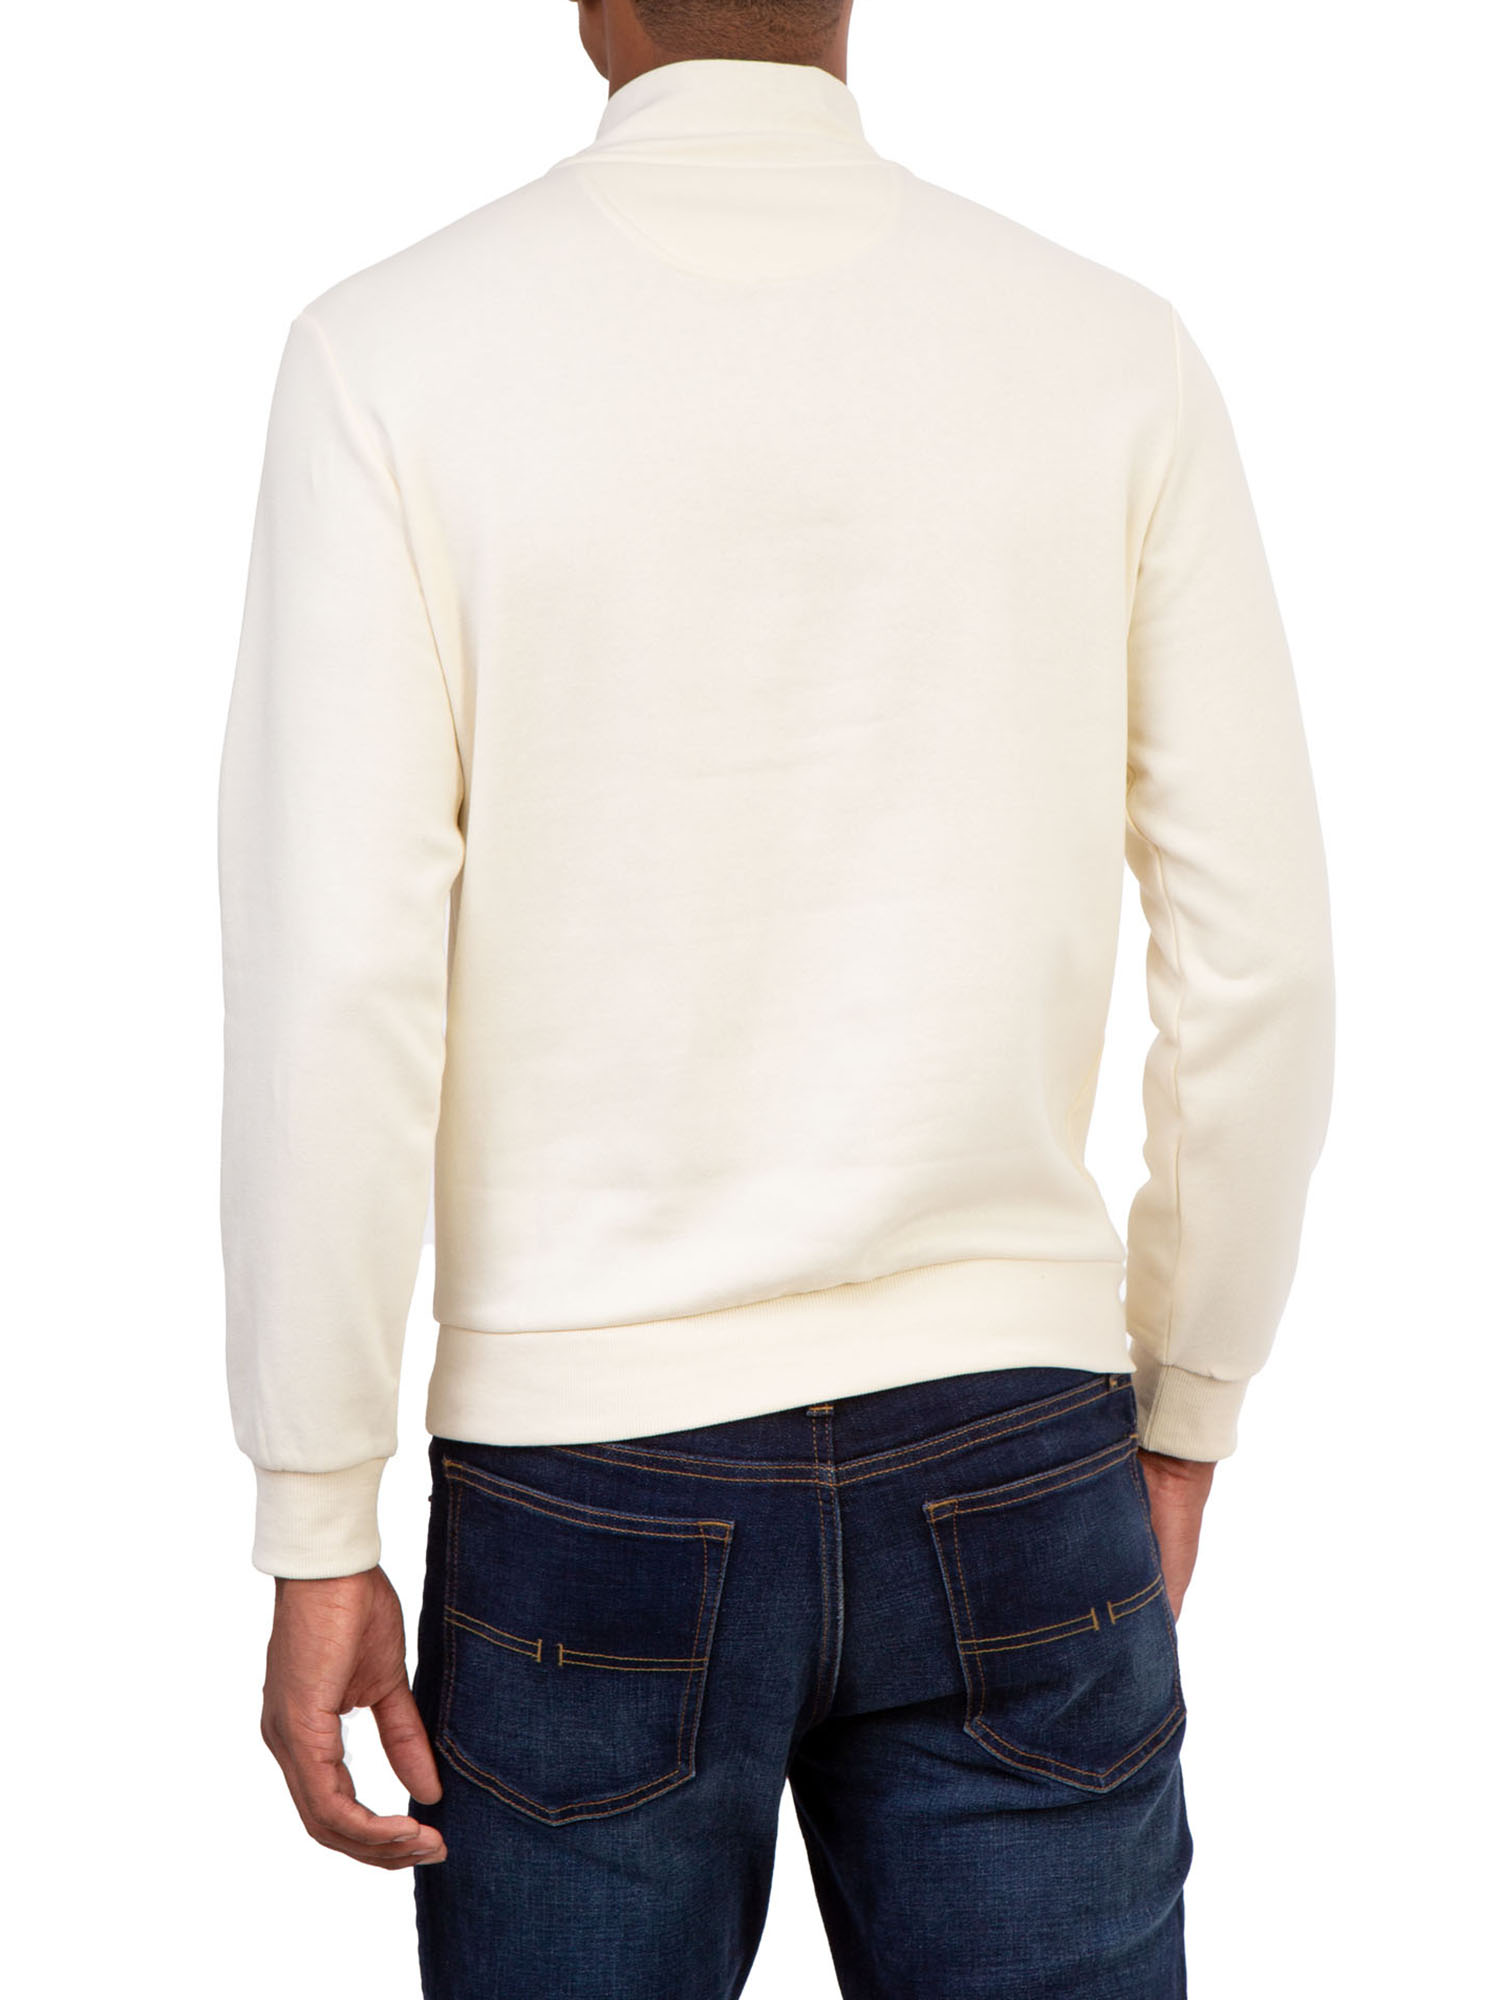 U.S. Polo Assn. Men's Quarter Zip Mock Neck Fleece Pullover - image 2 of 4